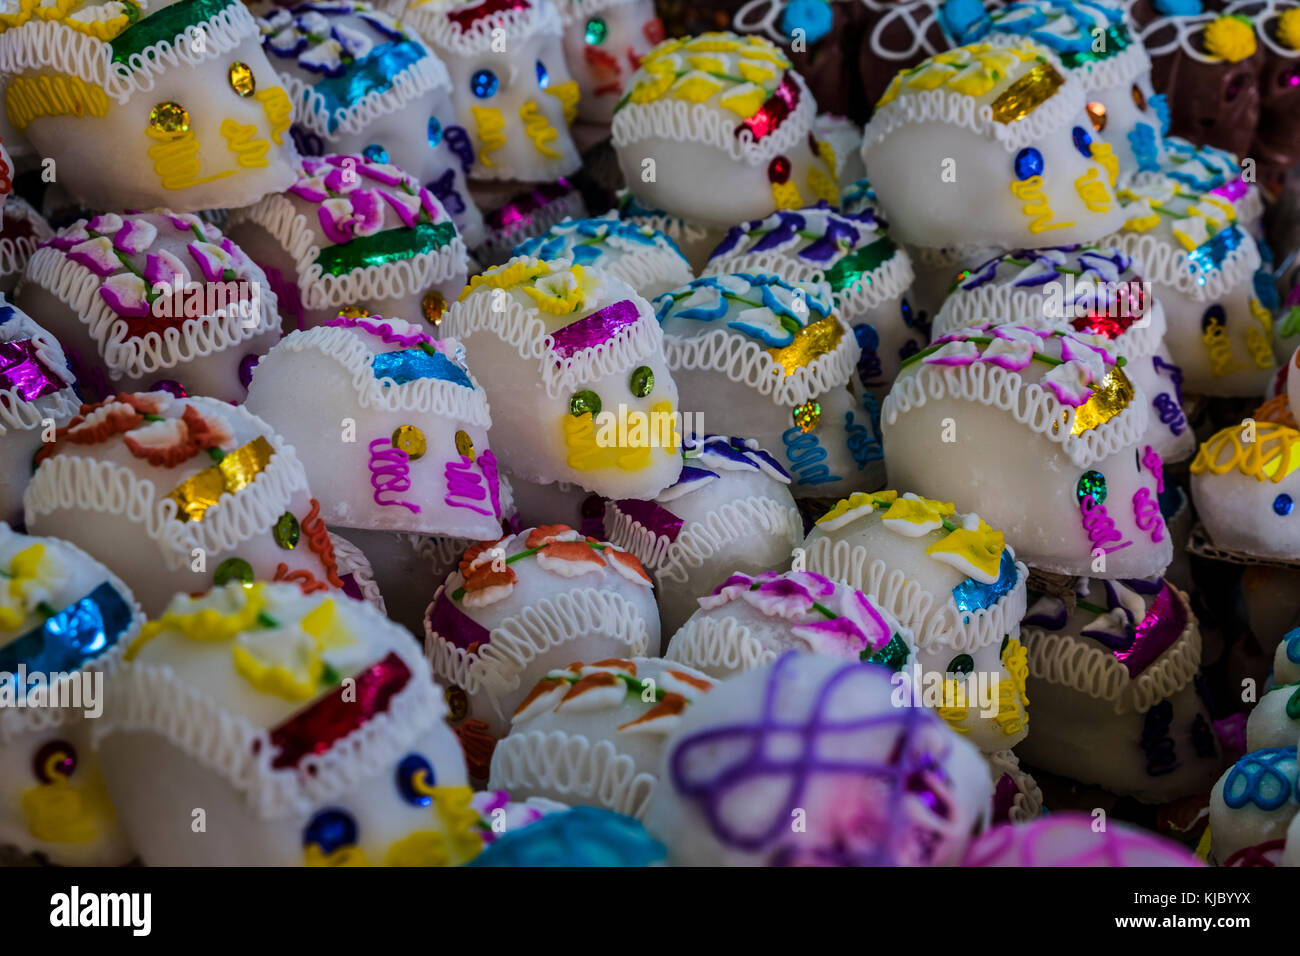 Calaveras de azucar, Mercado de San Angel, Dia de muertos. Sugar Skulls. Mexico City Stock Photo